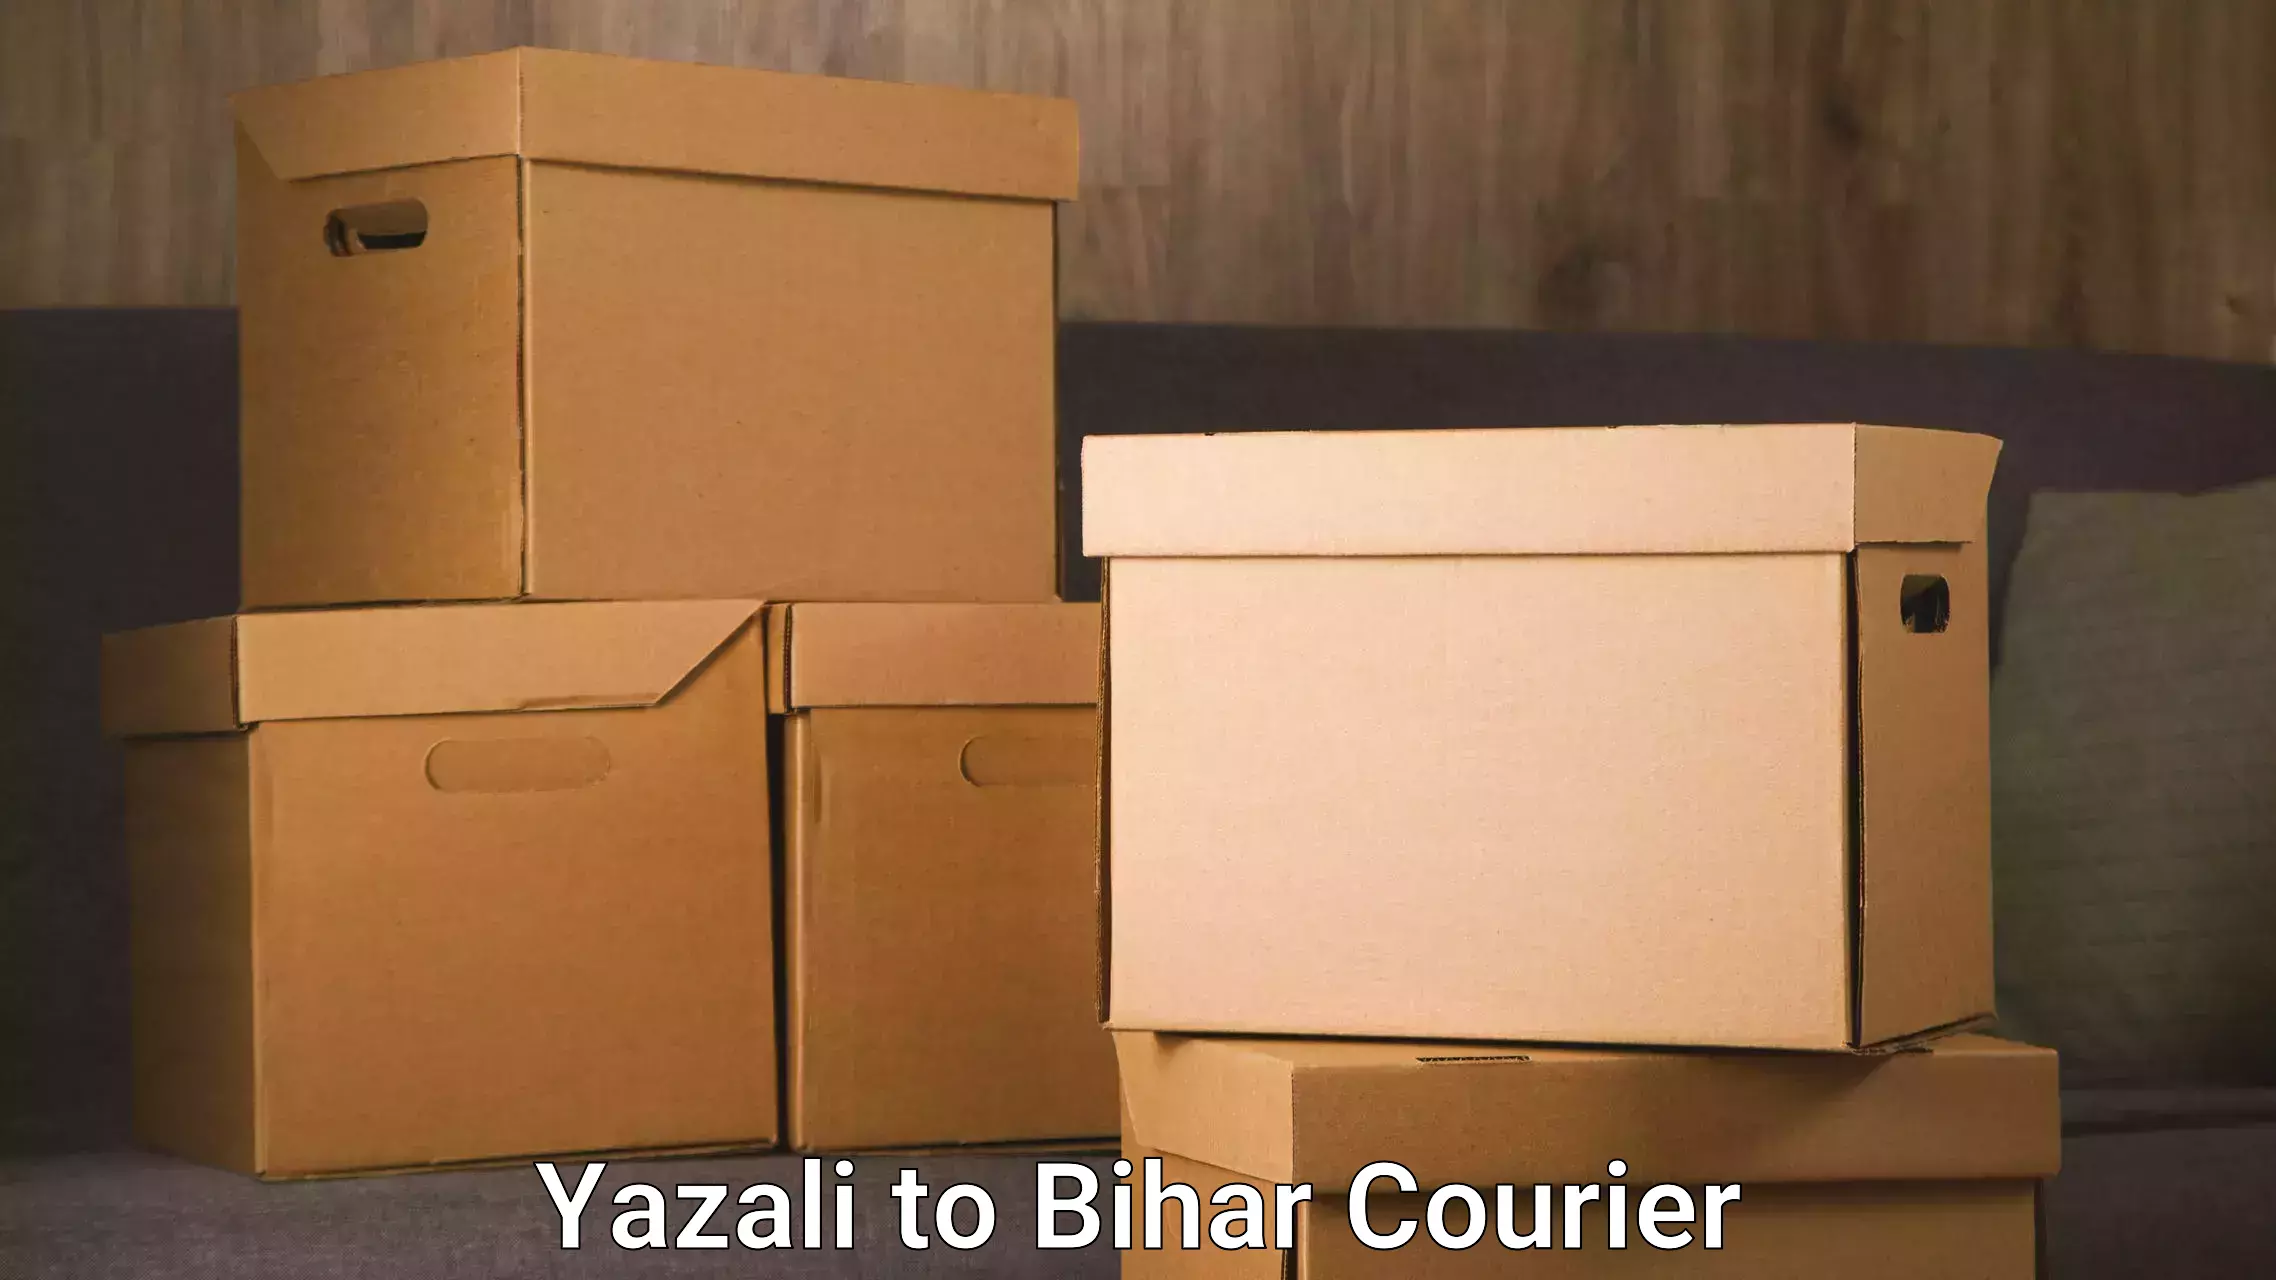 Fast shipping solutions Yazali to Bihar